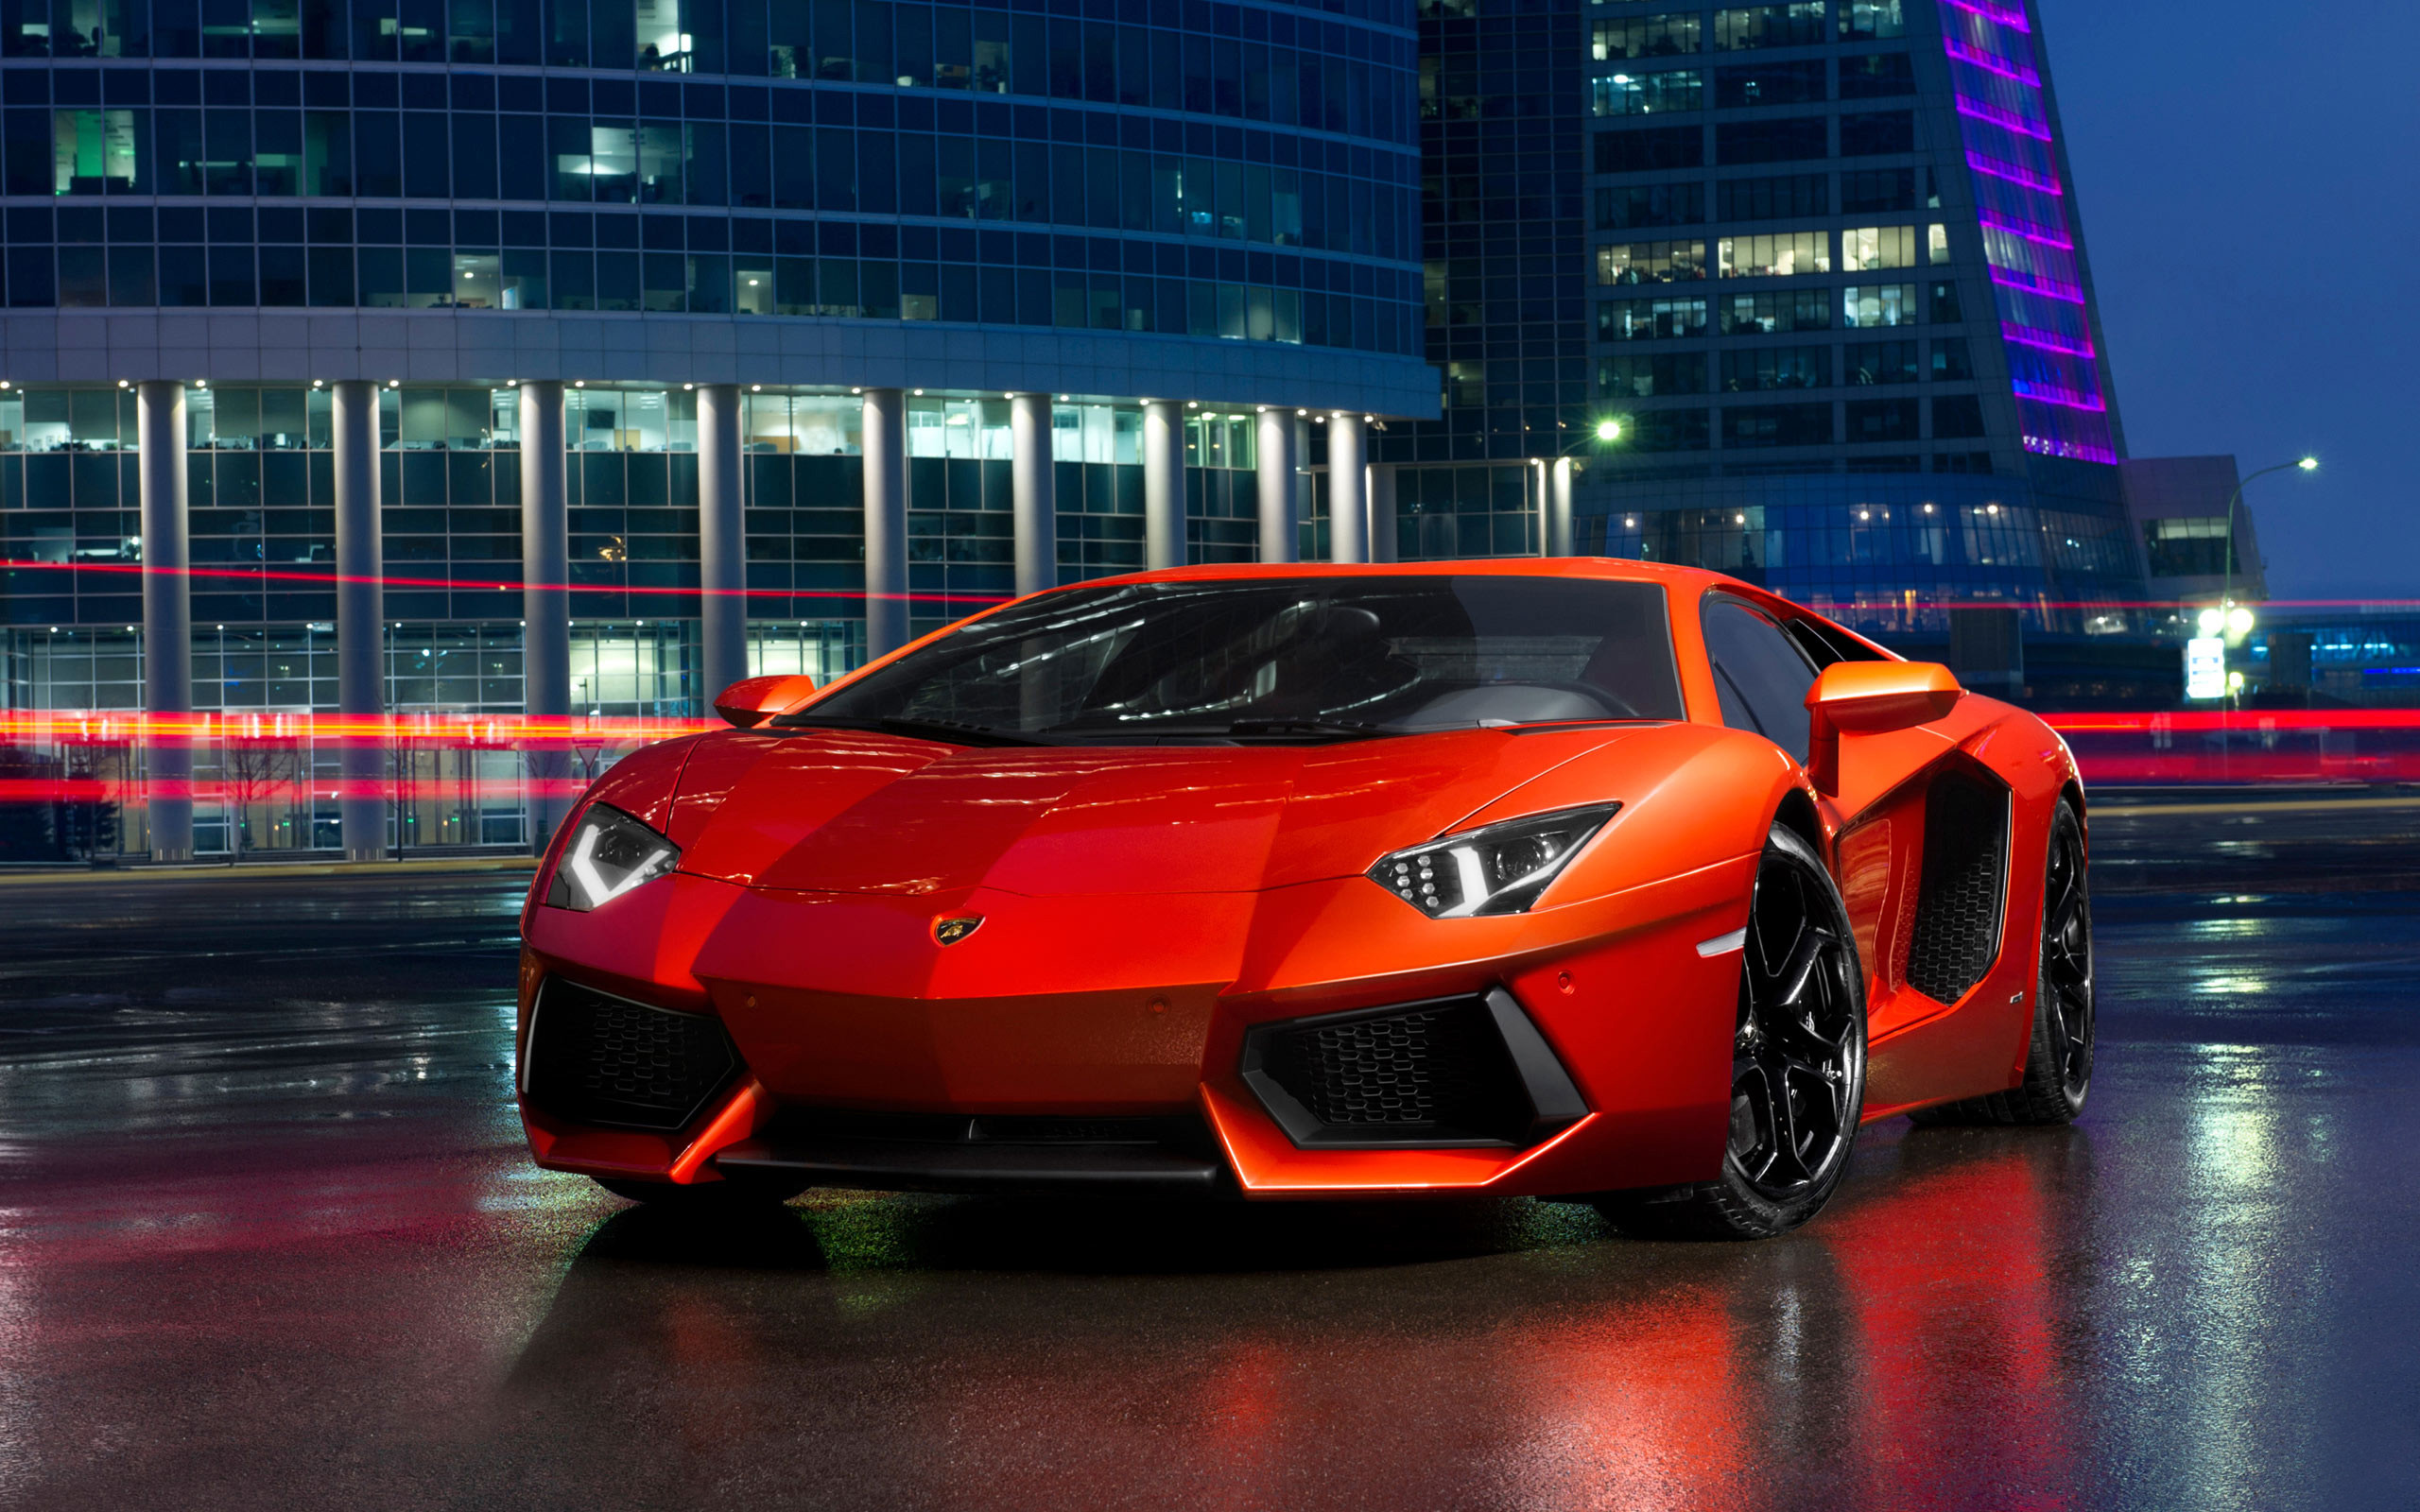 Lamborghini là một trong những thương hiệu siêu xe danh tiếng nhất thế giới, với chất lượng và thiết kế đỉnh cao. Những hình nền Lamborghini backgrounds sẽ mang đến cho bạn trải nghiệm tuyệt vời với những cảm giác sung sướng và phấn khích. Hãy tìm hiểu để cùng nhau khám phá những thước phim tuyệt đẹp về mẫu xe này.